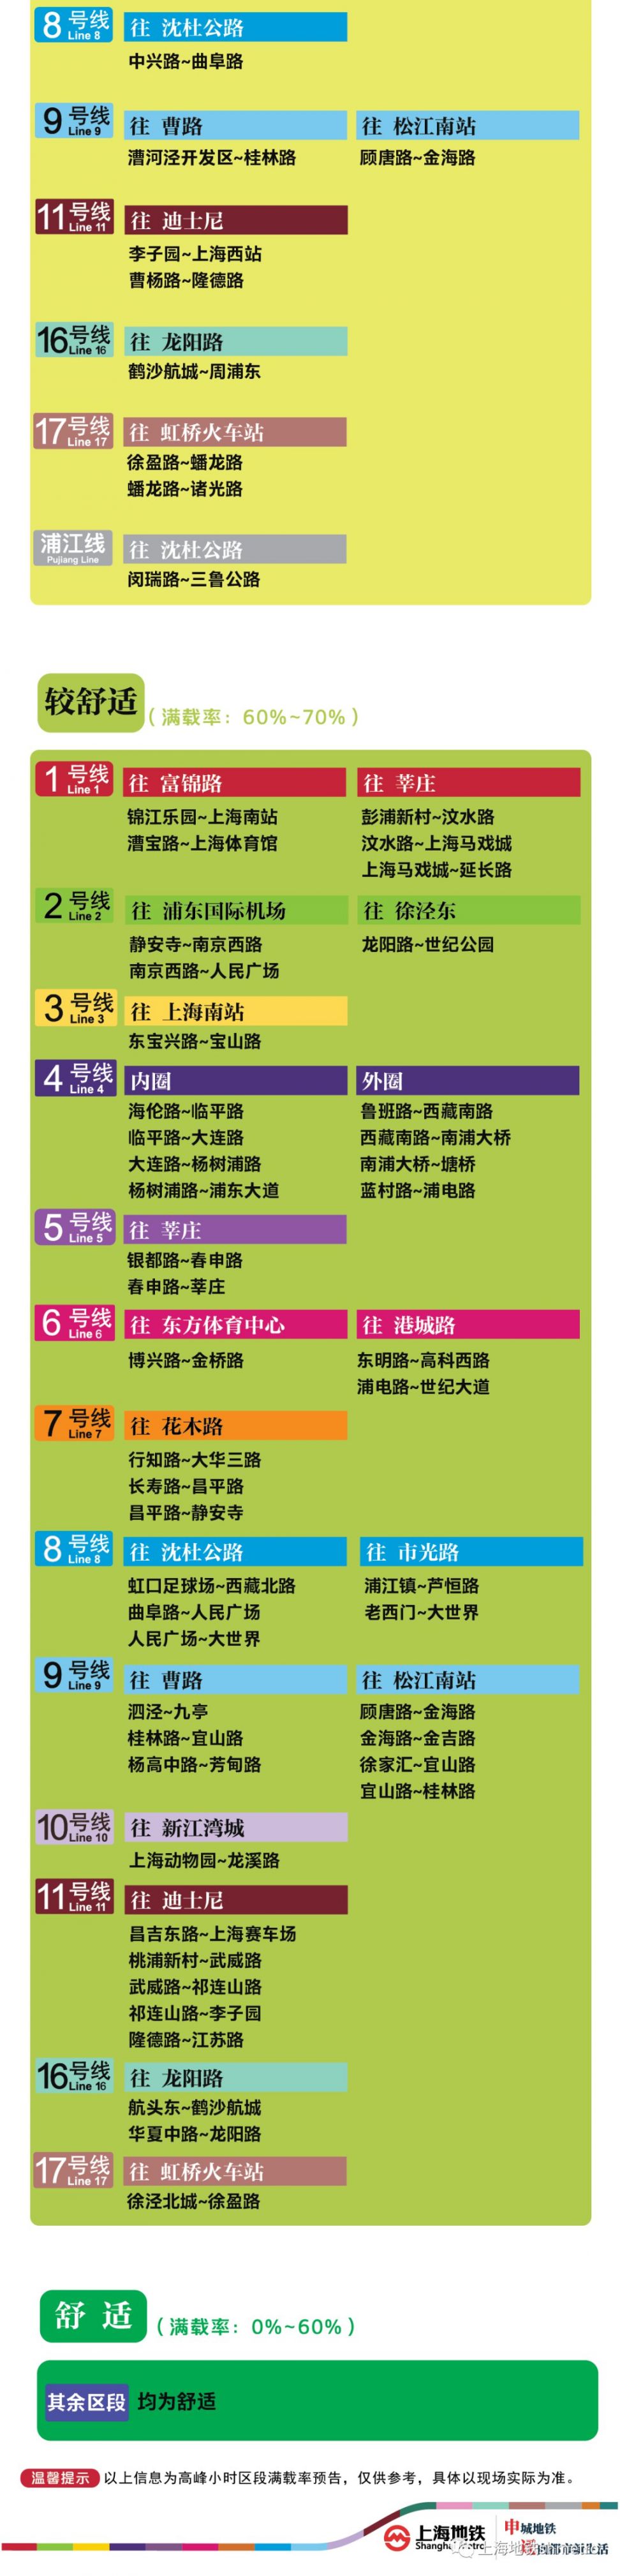 7月30日上海11座地铁站早高峰限流 (附舒适度预告)